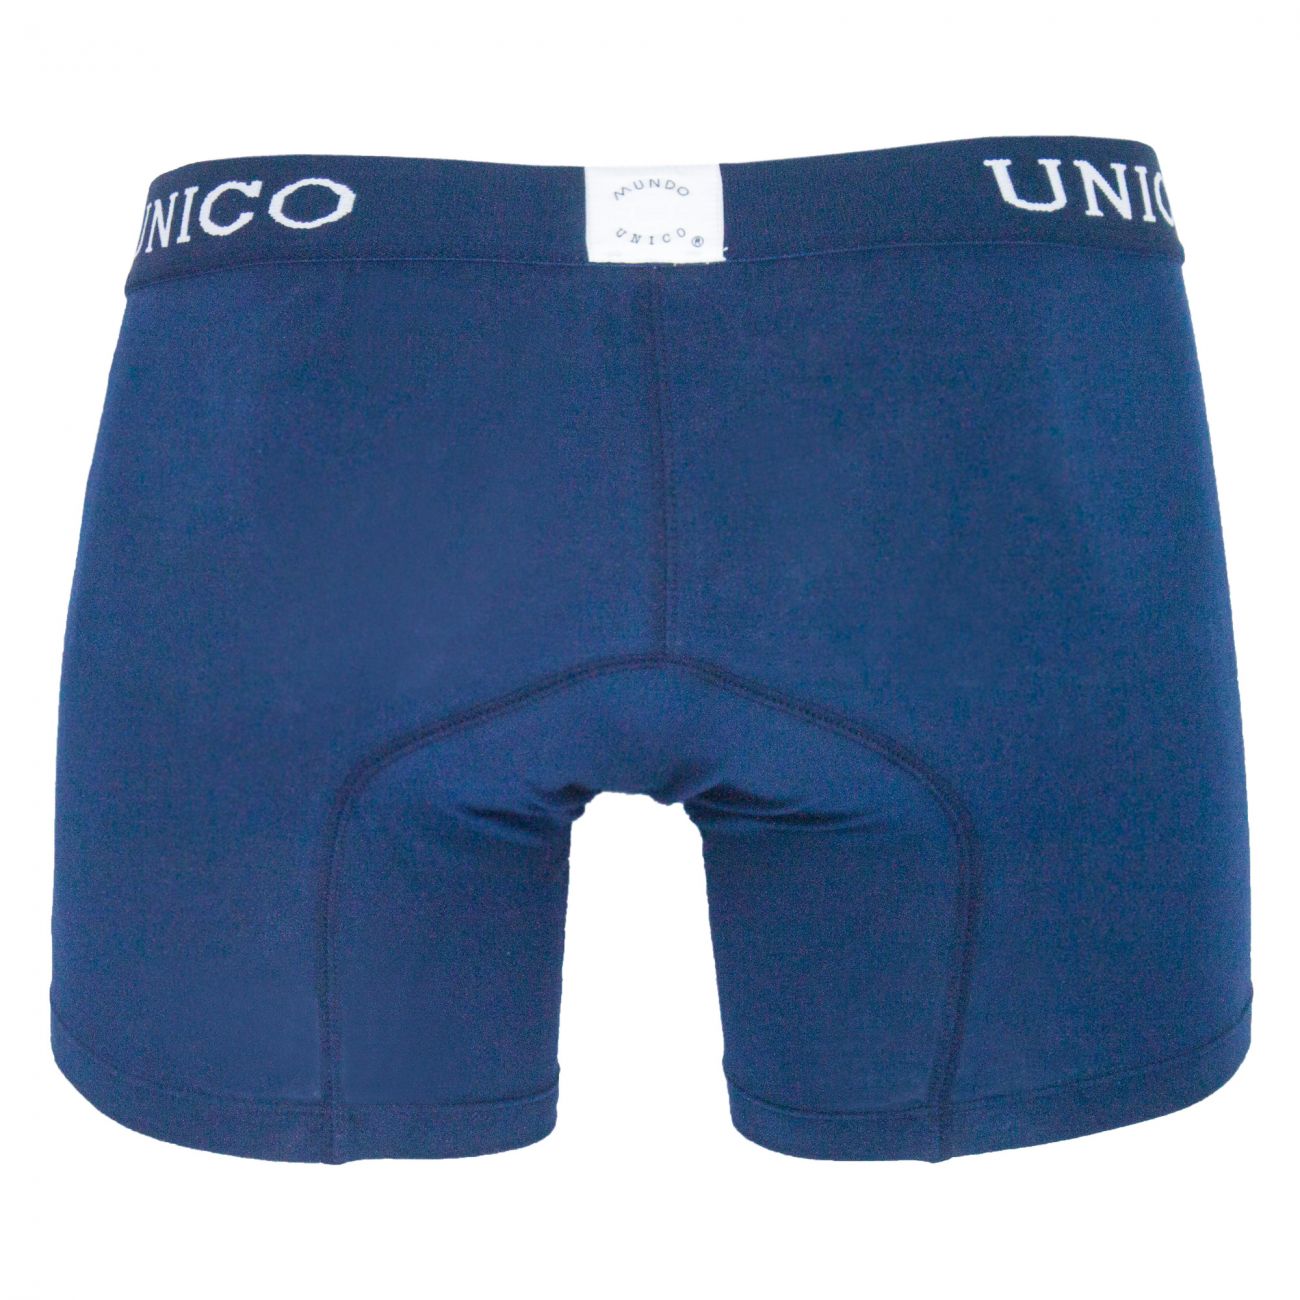 Unico (9612010020282) Boxer Briefs Profundo Cotton